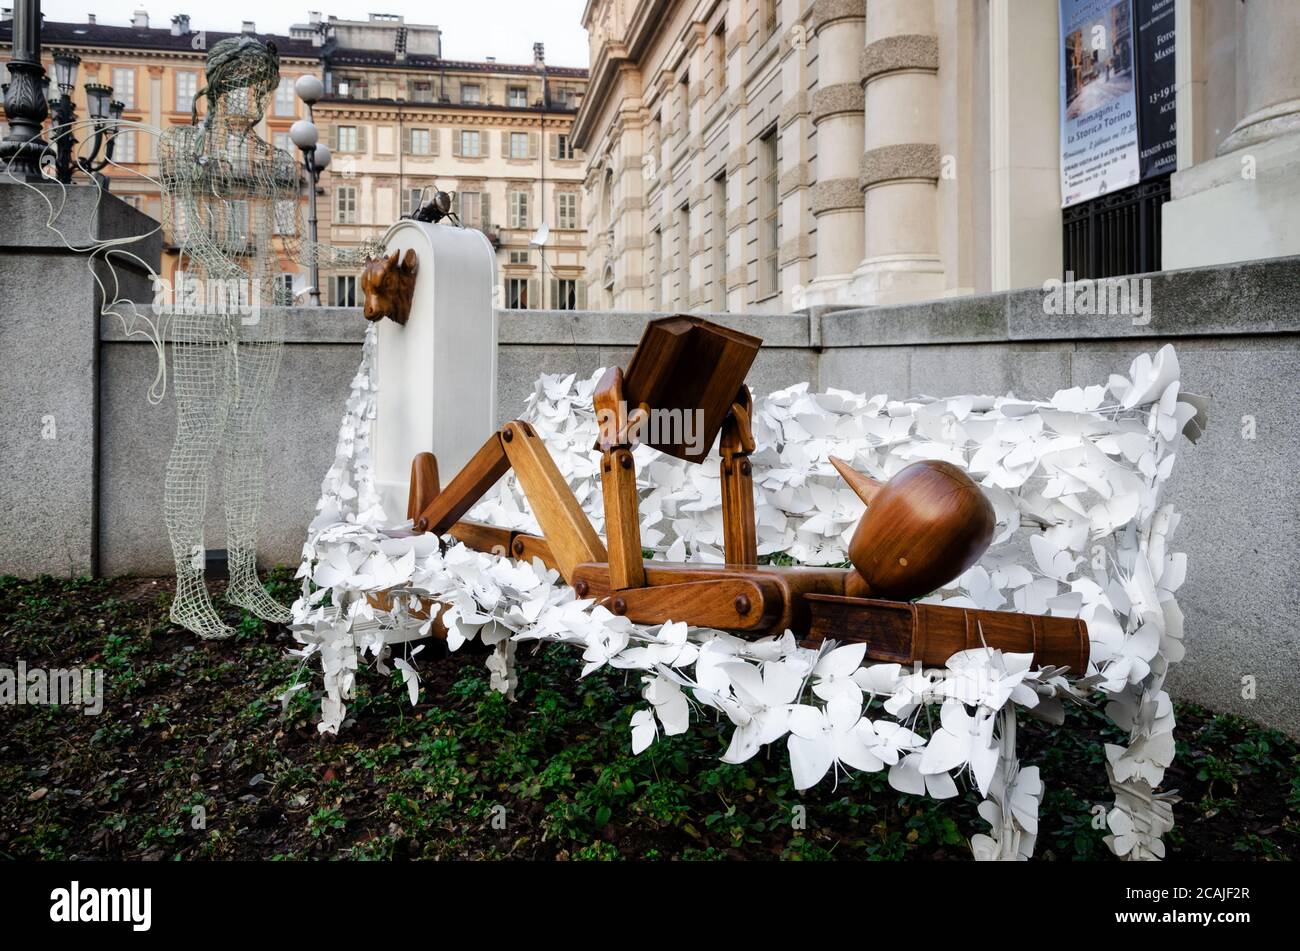 TURIN, ITALIEN - 19. FEBRUAR 2017: Städtische Skulptur von Rodolfo Marasciuolo, von Pinocchio beim Lesen eines Buches auf der piazza Carlo Alberto in Turin (Italien Stockfoto